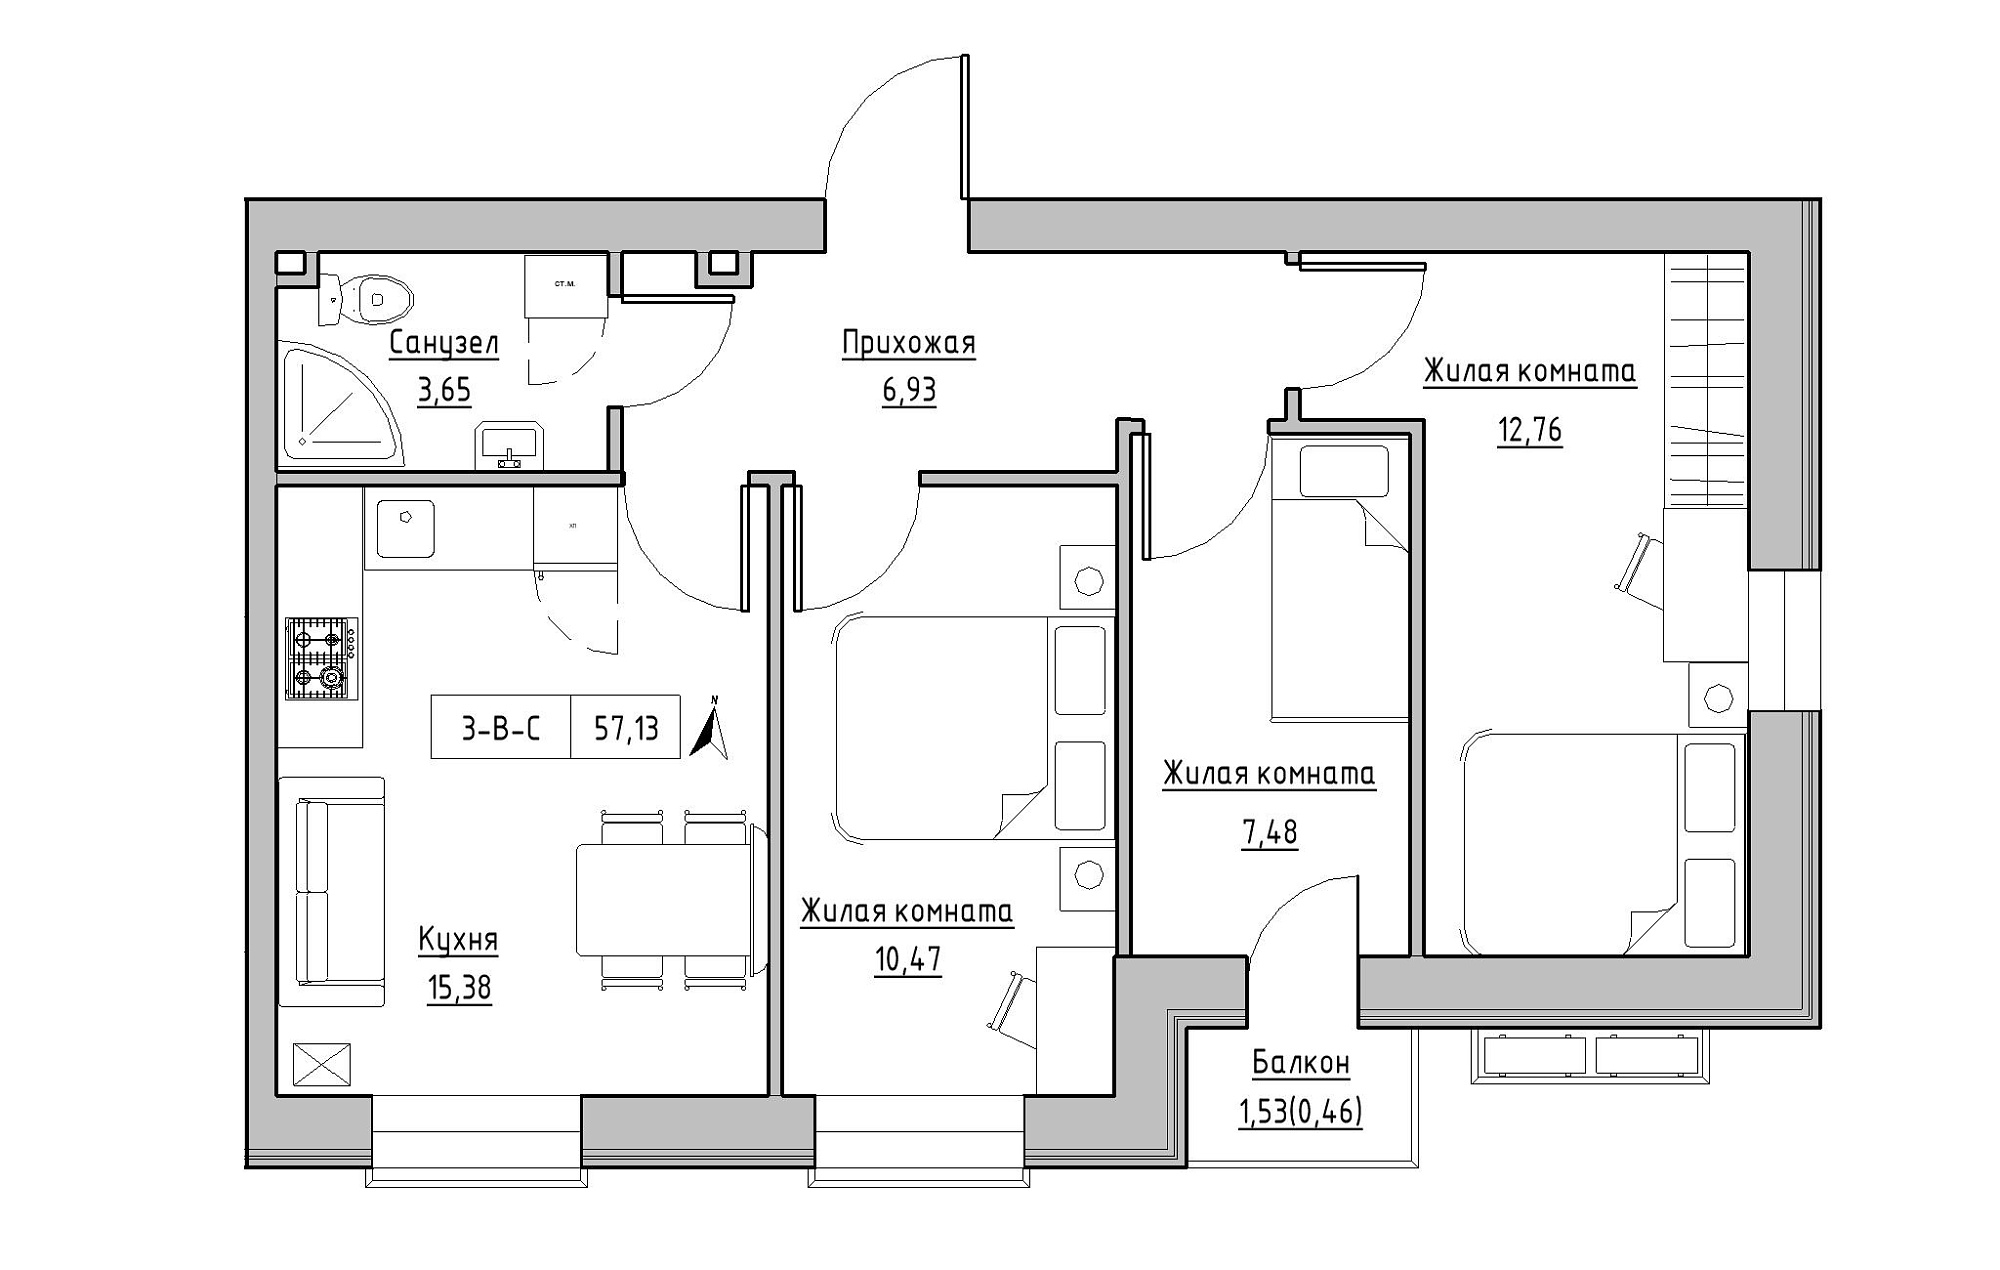 Планування 3-к квартира площею 57.13м2, KS-019-03/0008.